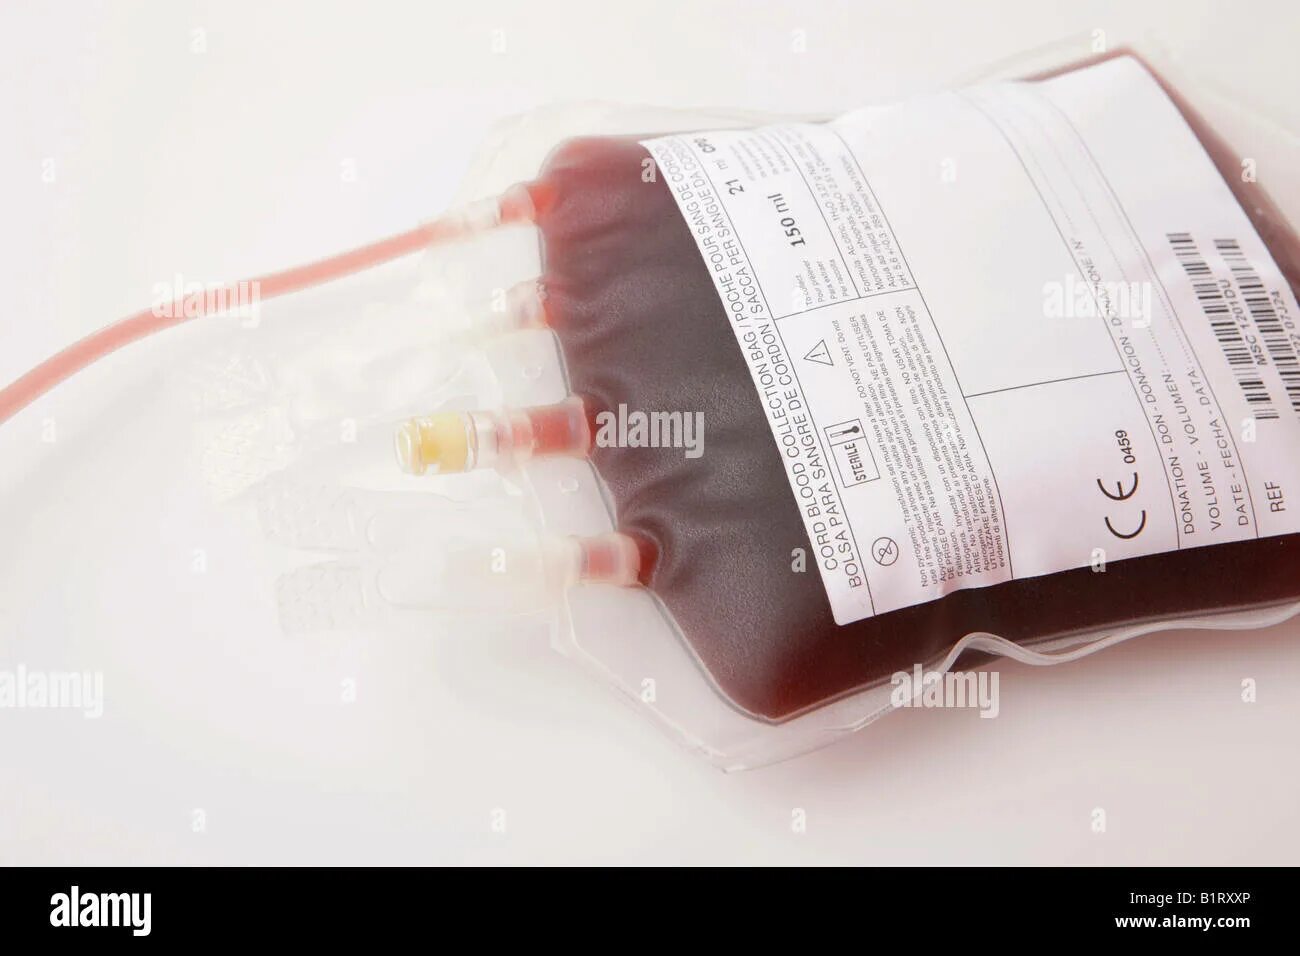 Переливание крови при каком гемоглобине. Кровь для переливания крови гемоглобин. Переливание при низком гемоглобине. Переливание крови при низком гемоглобине. Цвет крови и гемоглобин.